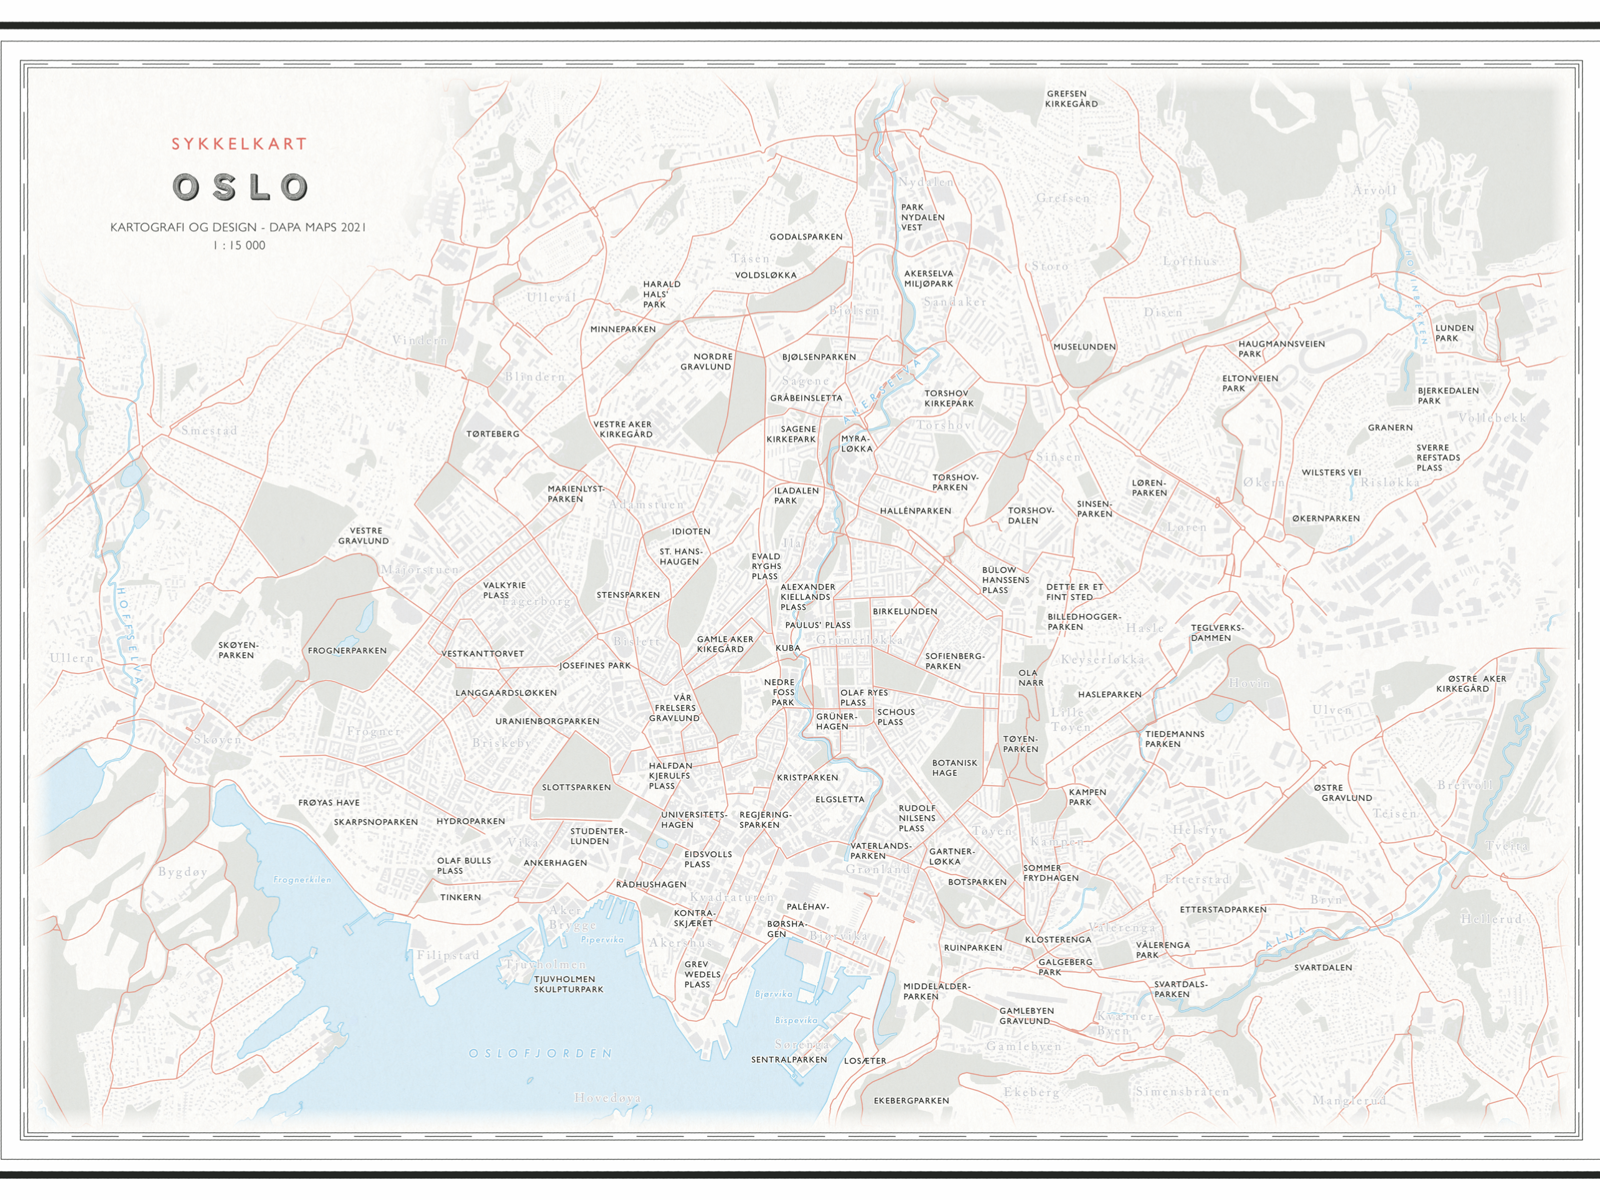 Kart over Oslo. Illustrasjon.